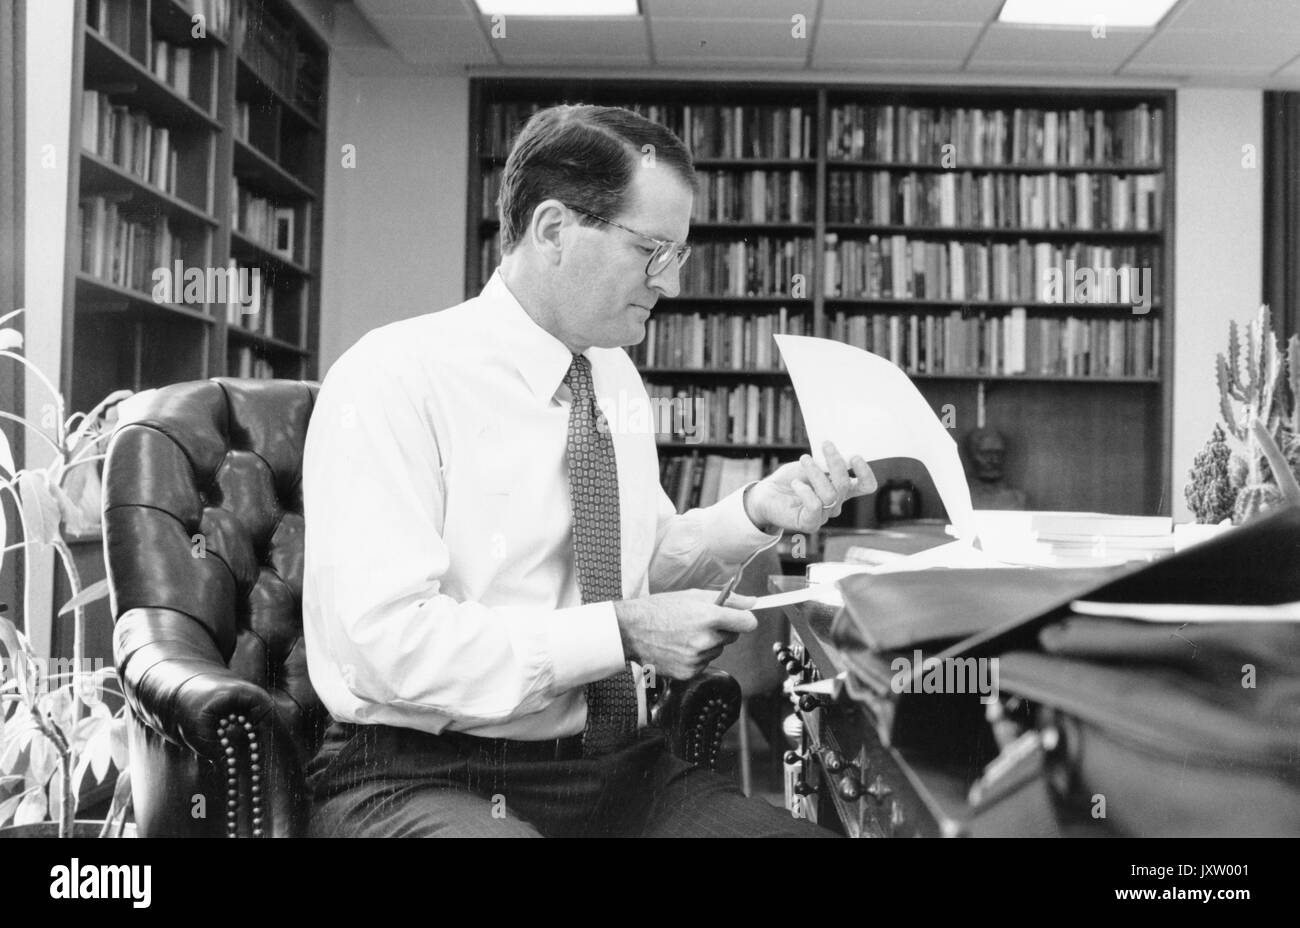 William Ralph Brody, ehrliche Foto, am Schreibtisch sitzend mit Papieren in der Hand, 52 Jahre alt, 1996. Stockfoto